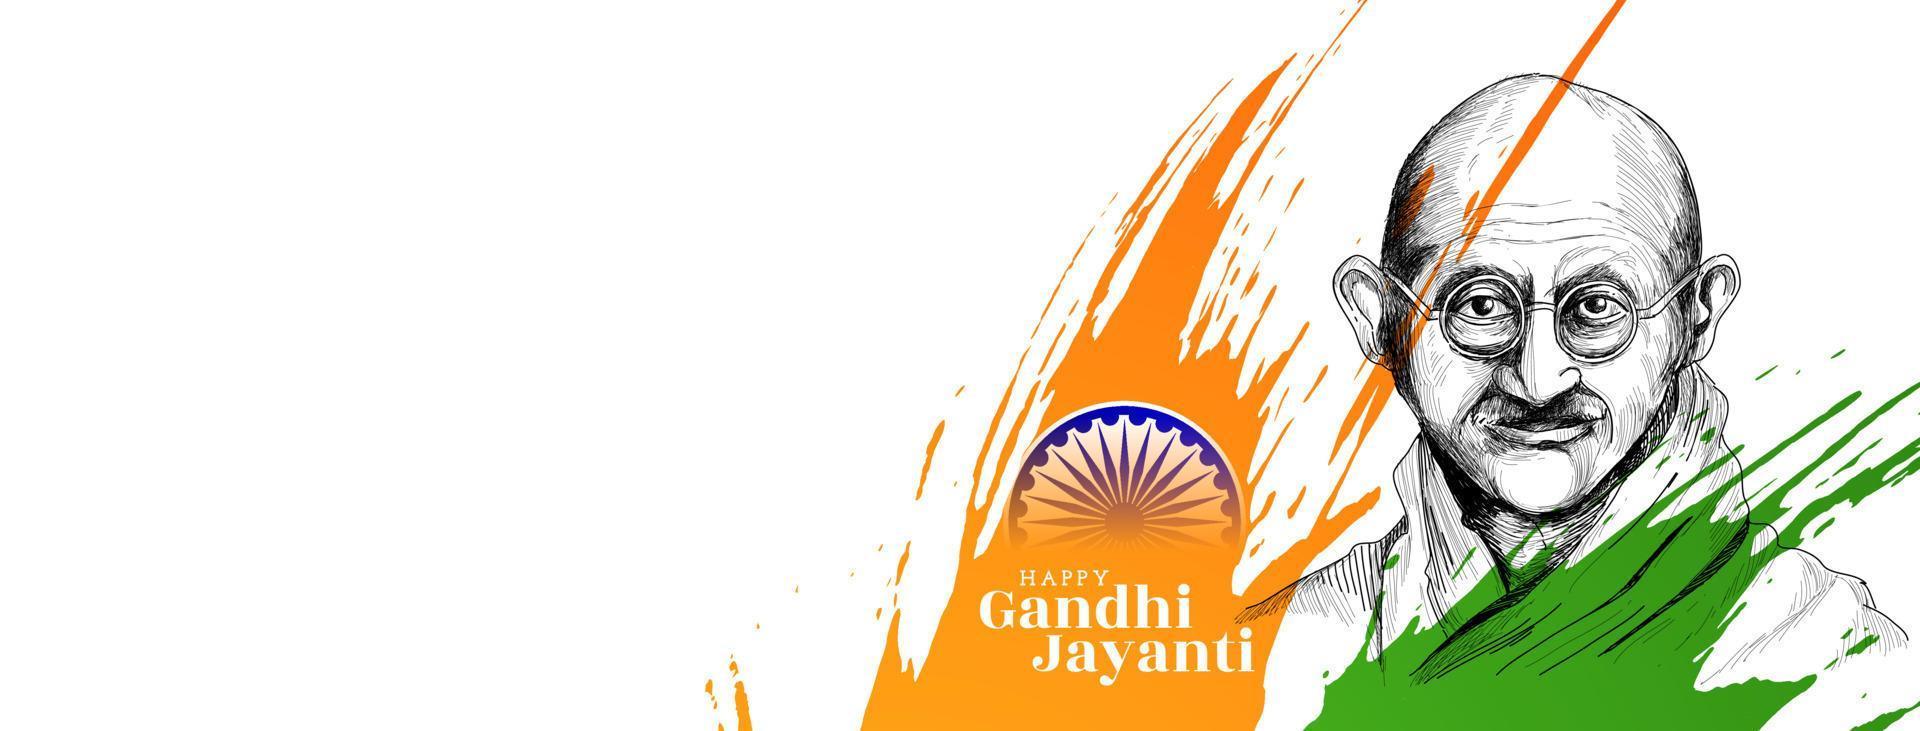 feliz gandhi jayanti 2 de octubre celebración diseño de banner vector